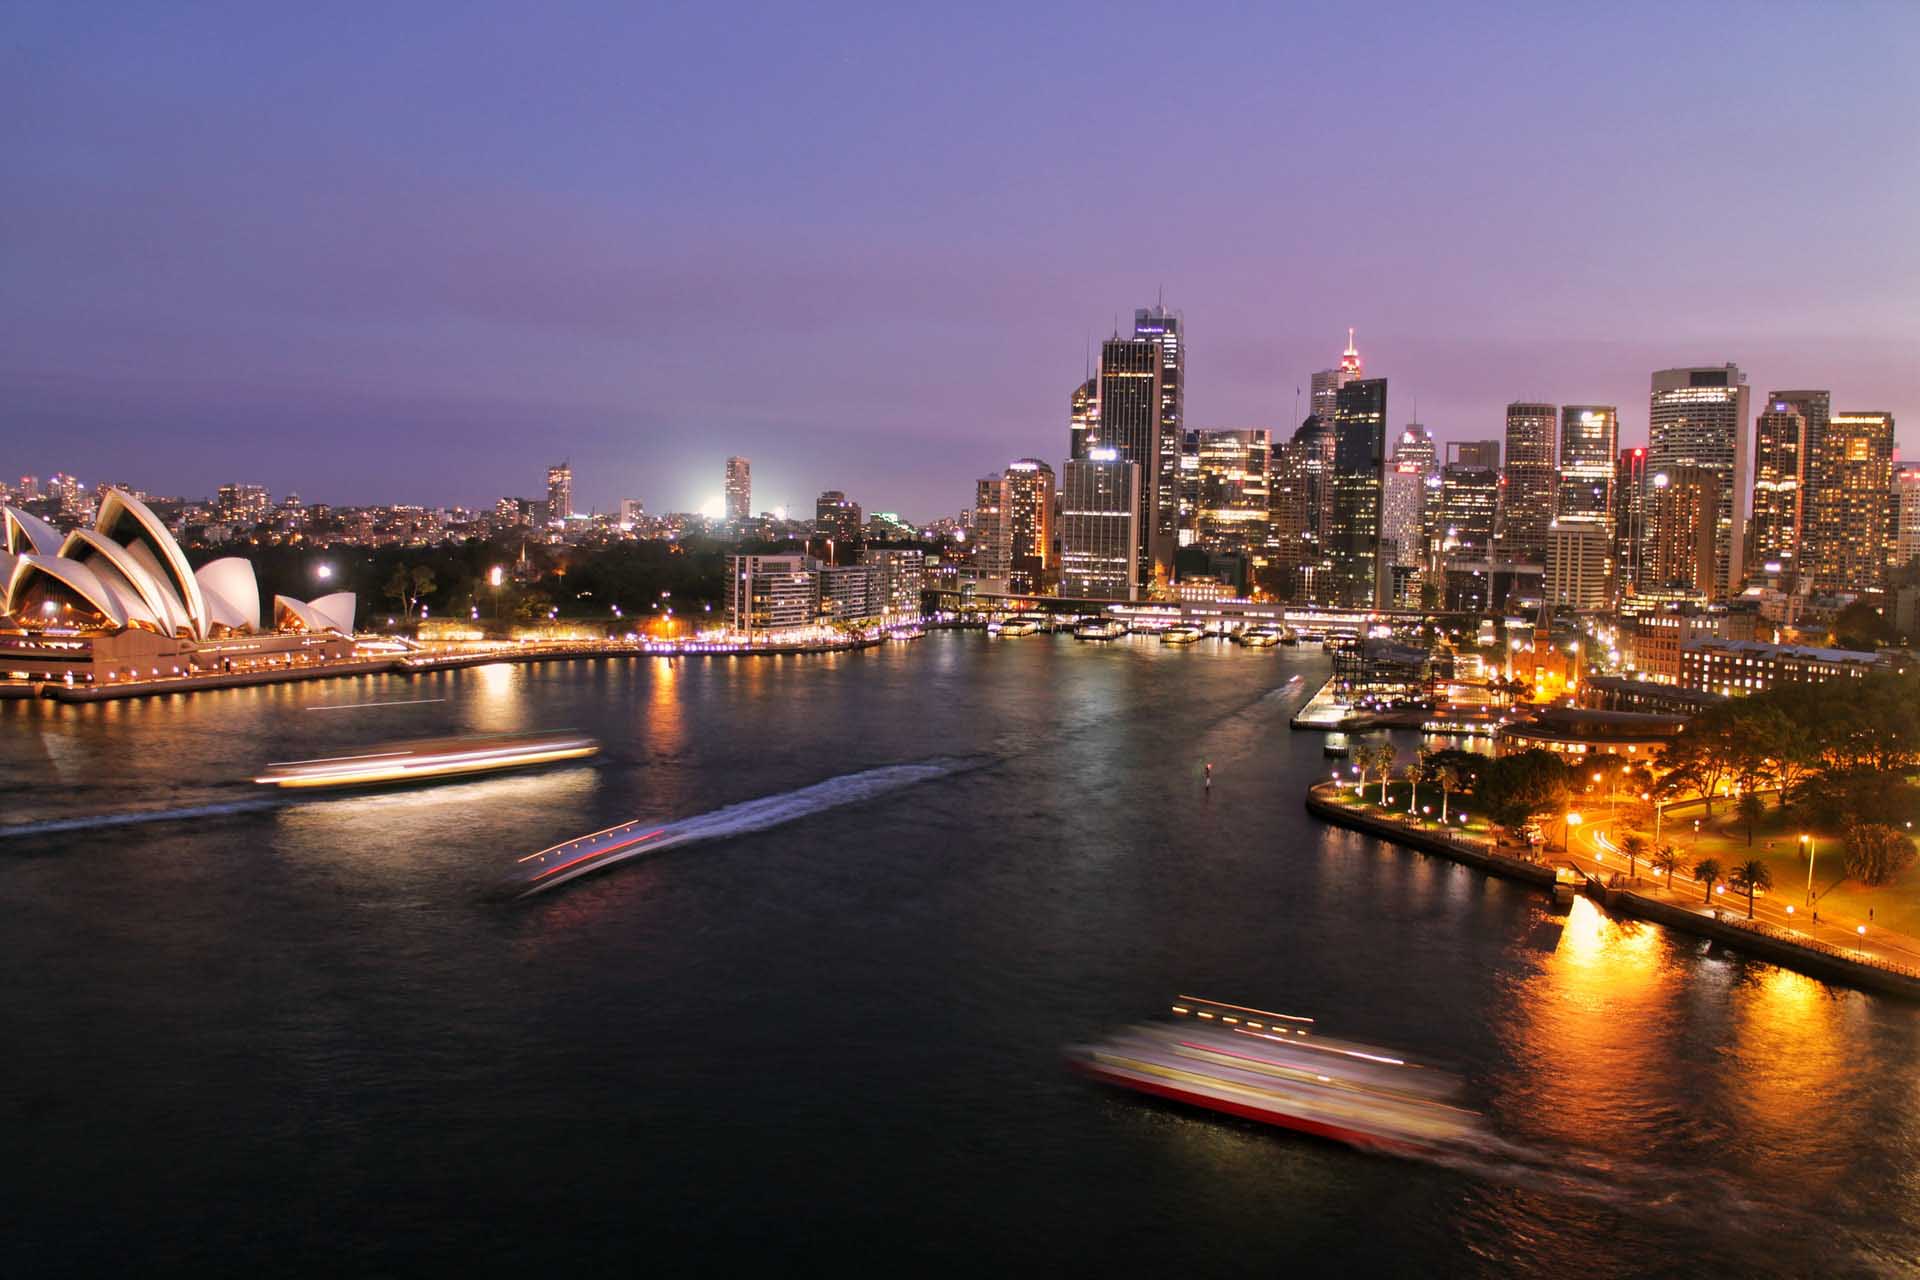 Sydney Ausztrália | Studyfferently